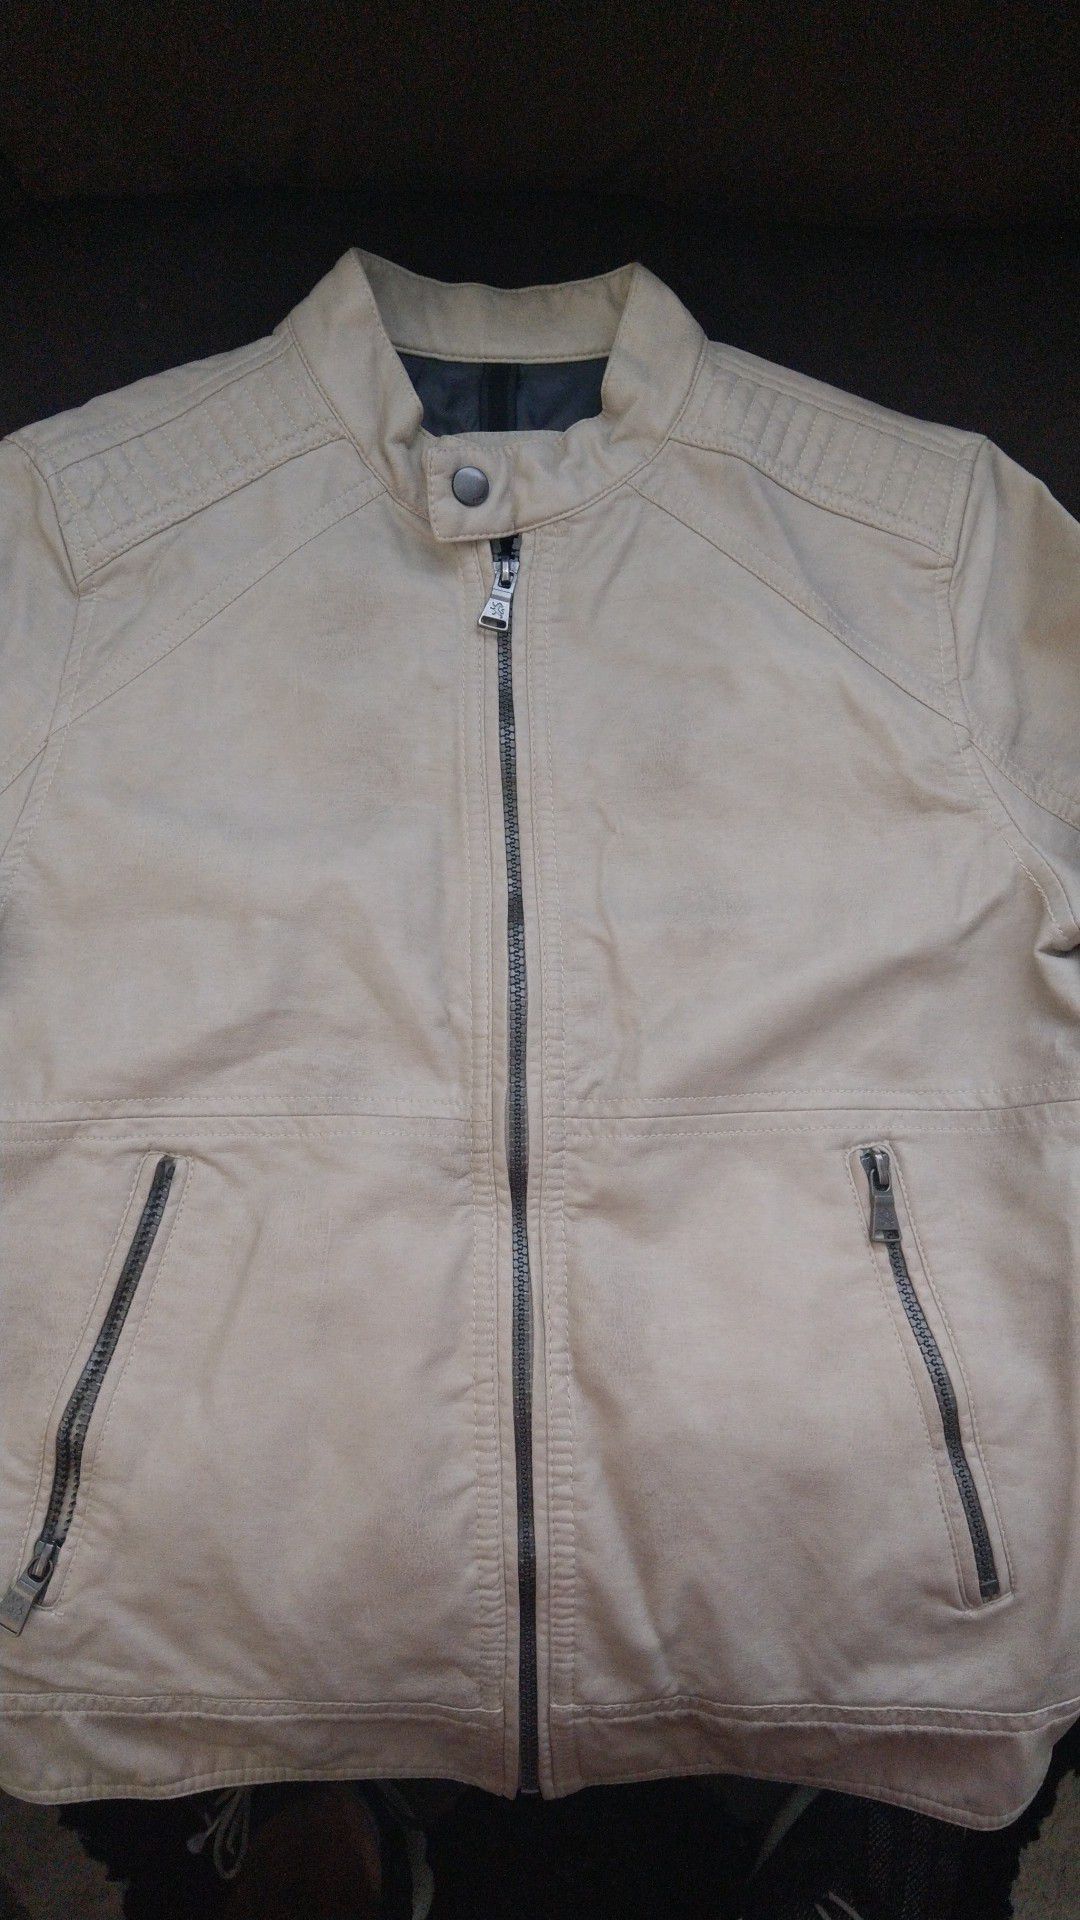 Express leather biker jacket